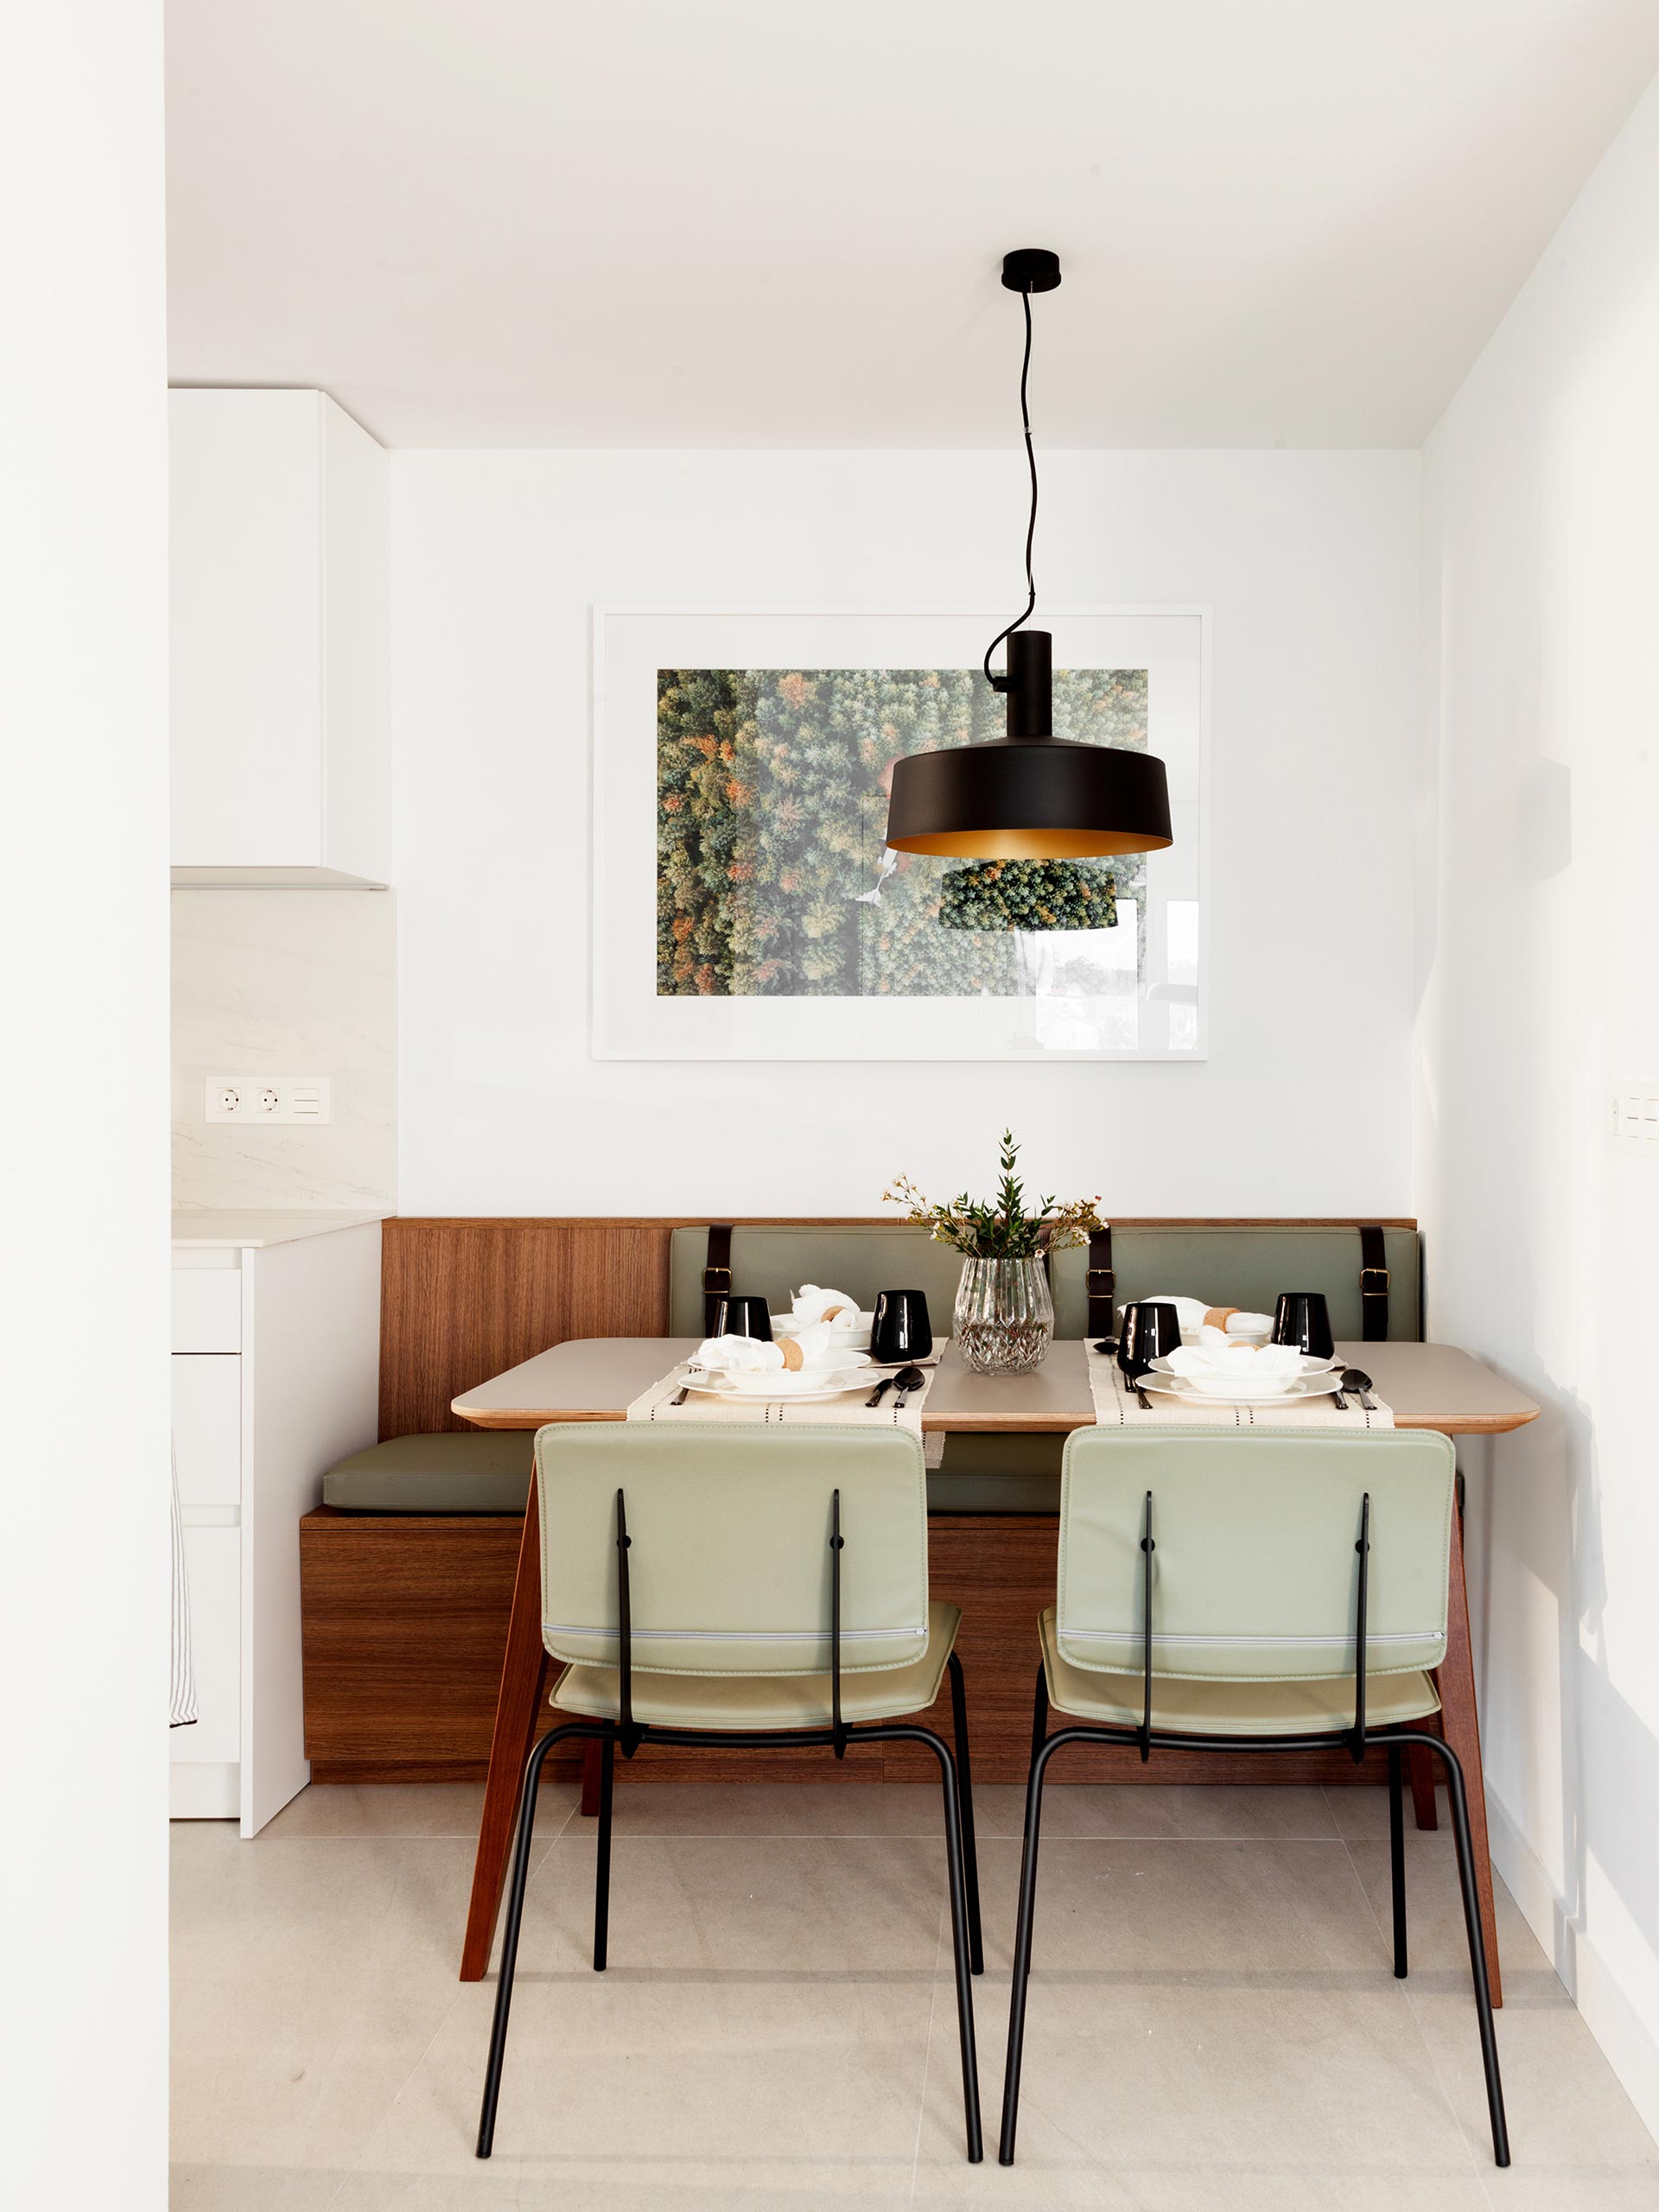 Cozinhas Santos em espaços pequenos, pela designer Natalia Zubizarreta